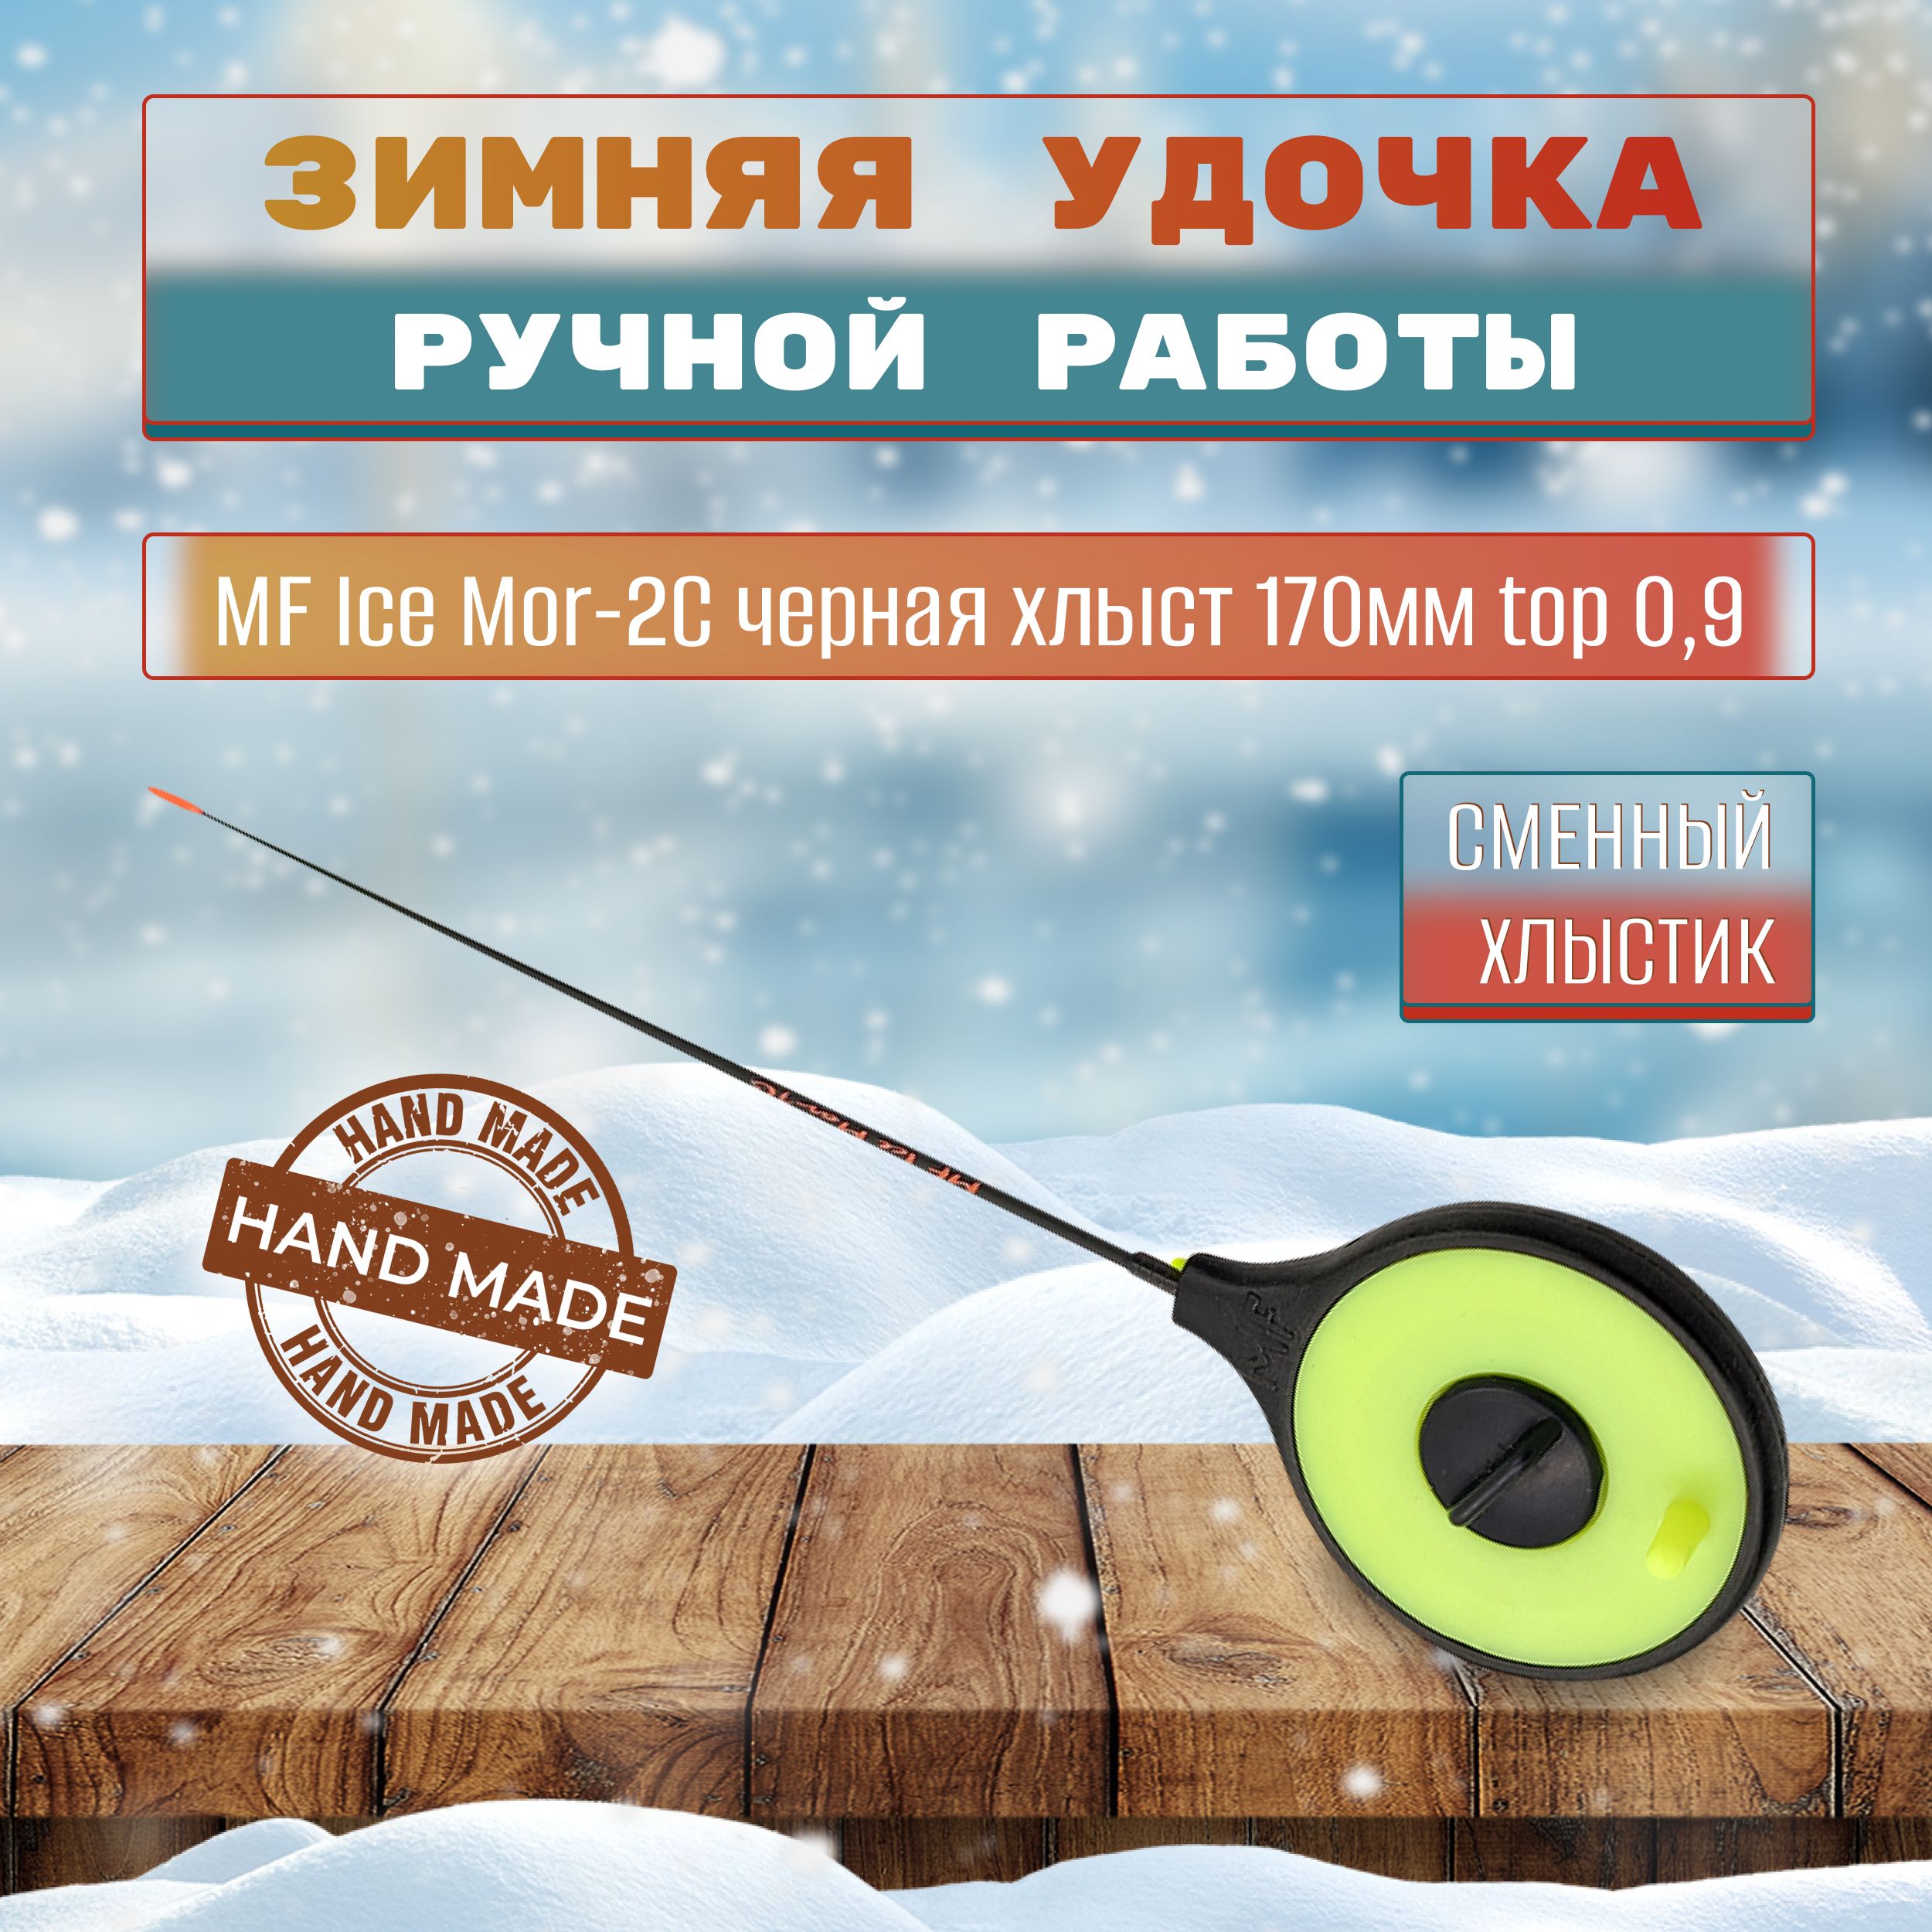 Удочка зимняя MF Ice Mor-2C черная хлыст 170мм top 0,9 морозостойкая